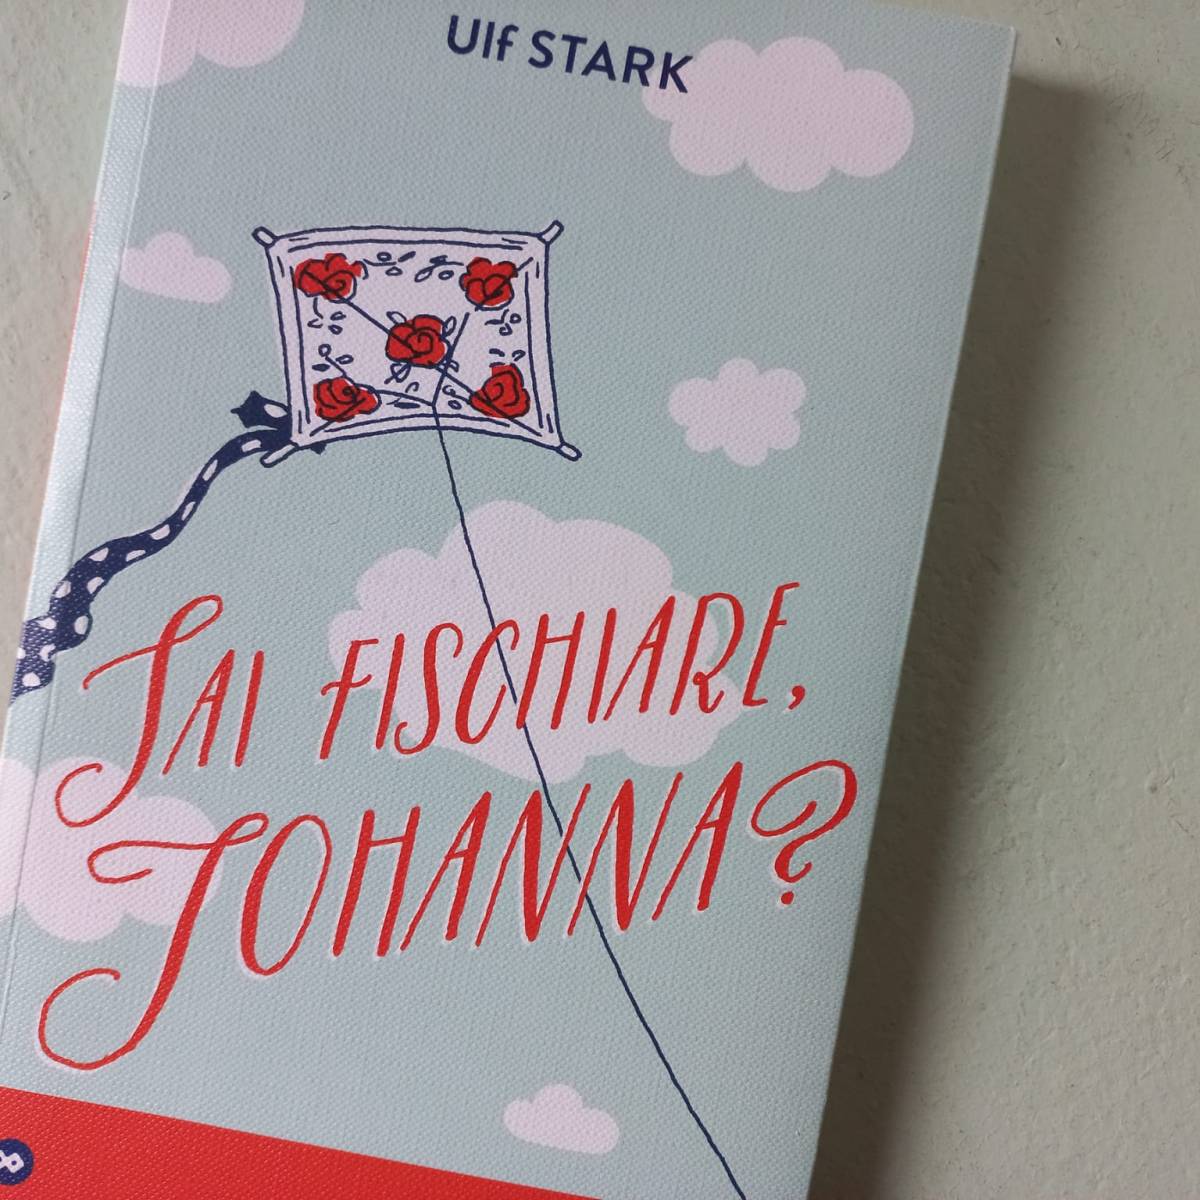 Ulf Stark – Sai fischiare, Johanna?